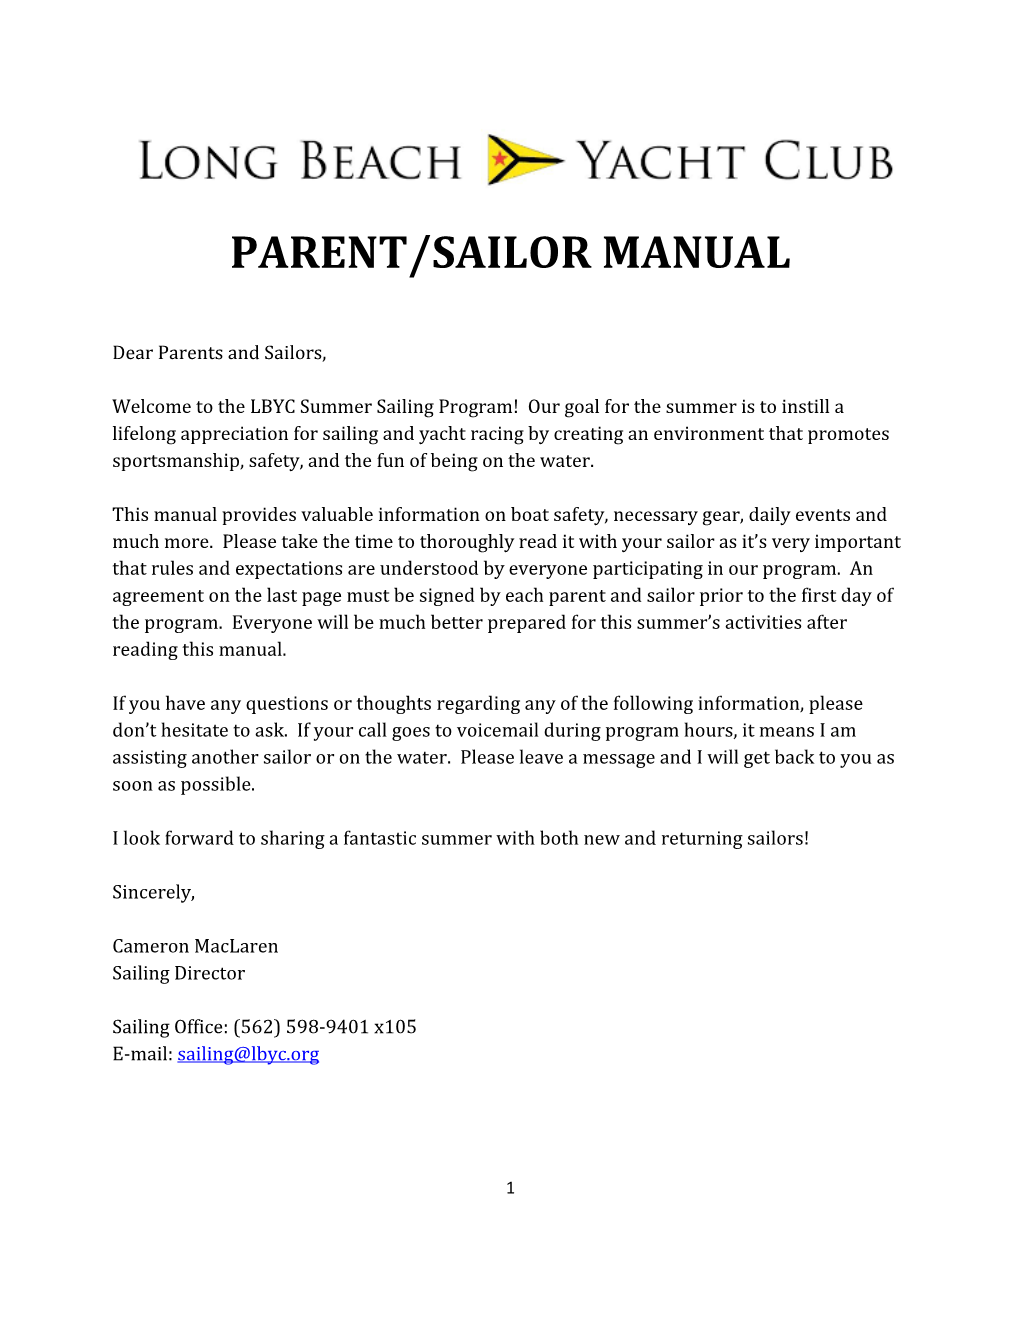 Parent/Sailor Manual